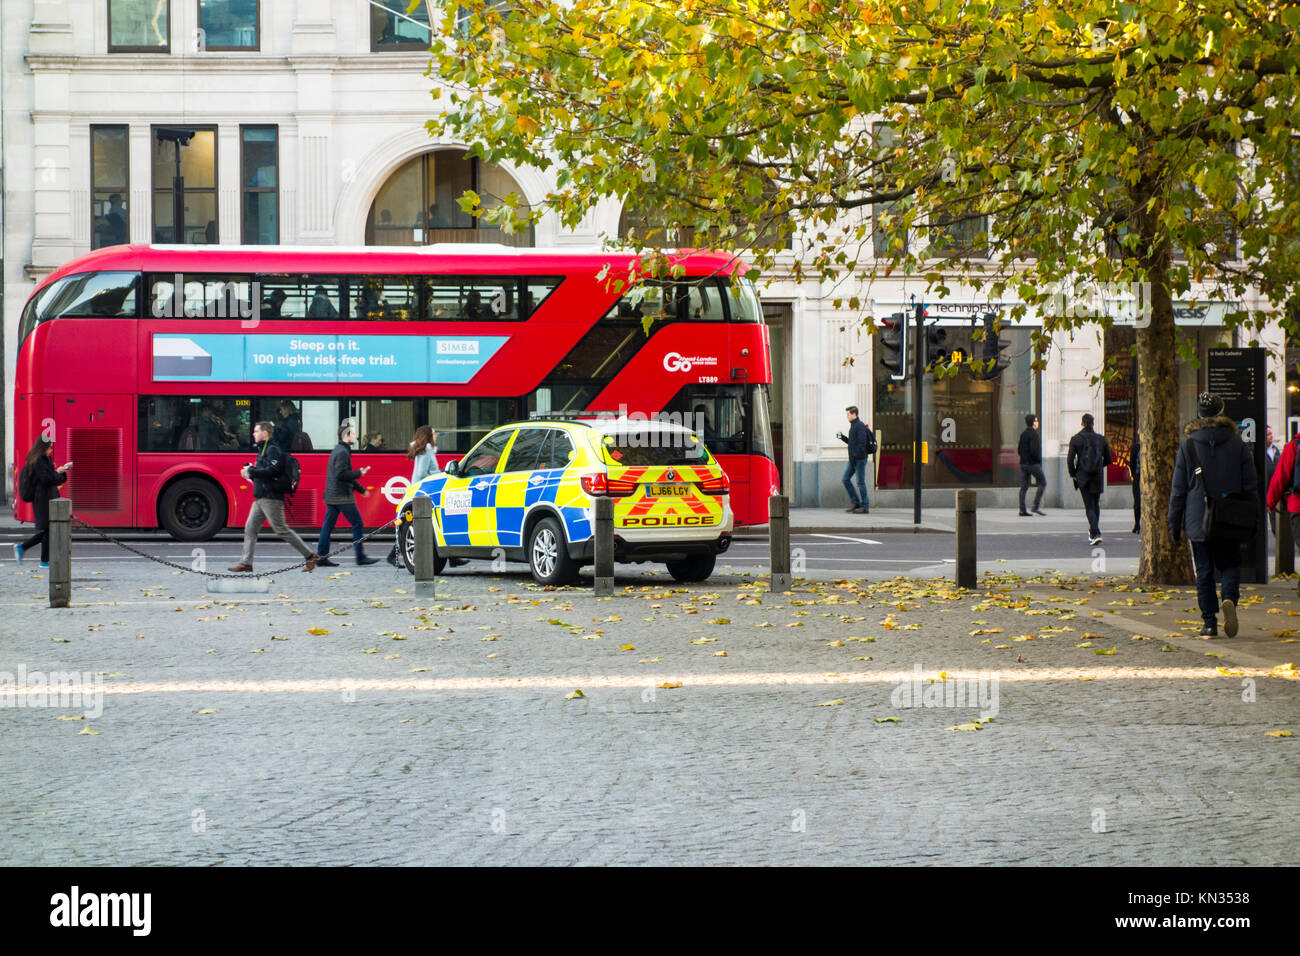 Ville de London police véhicule stationné à St Paul's Churchyard, London, UK Banque D'Images